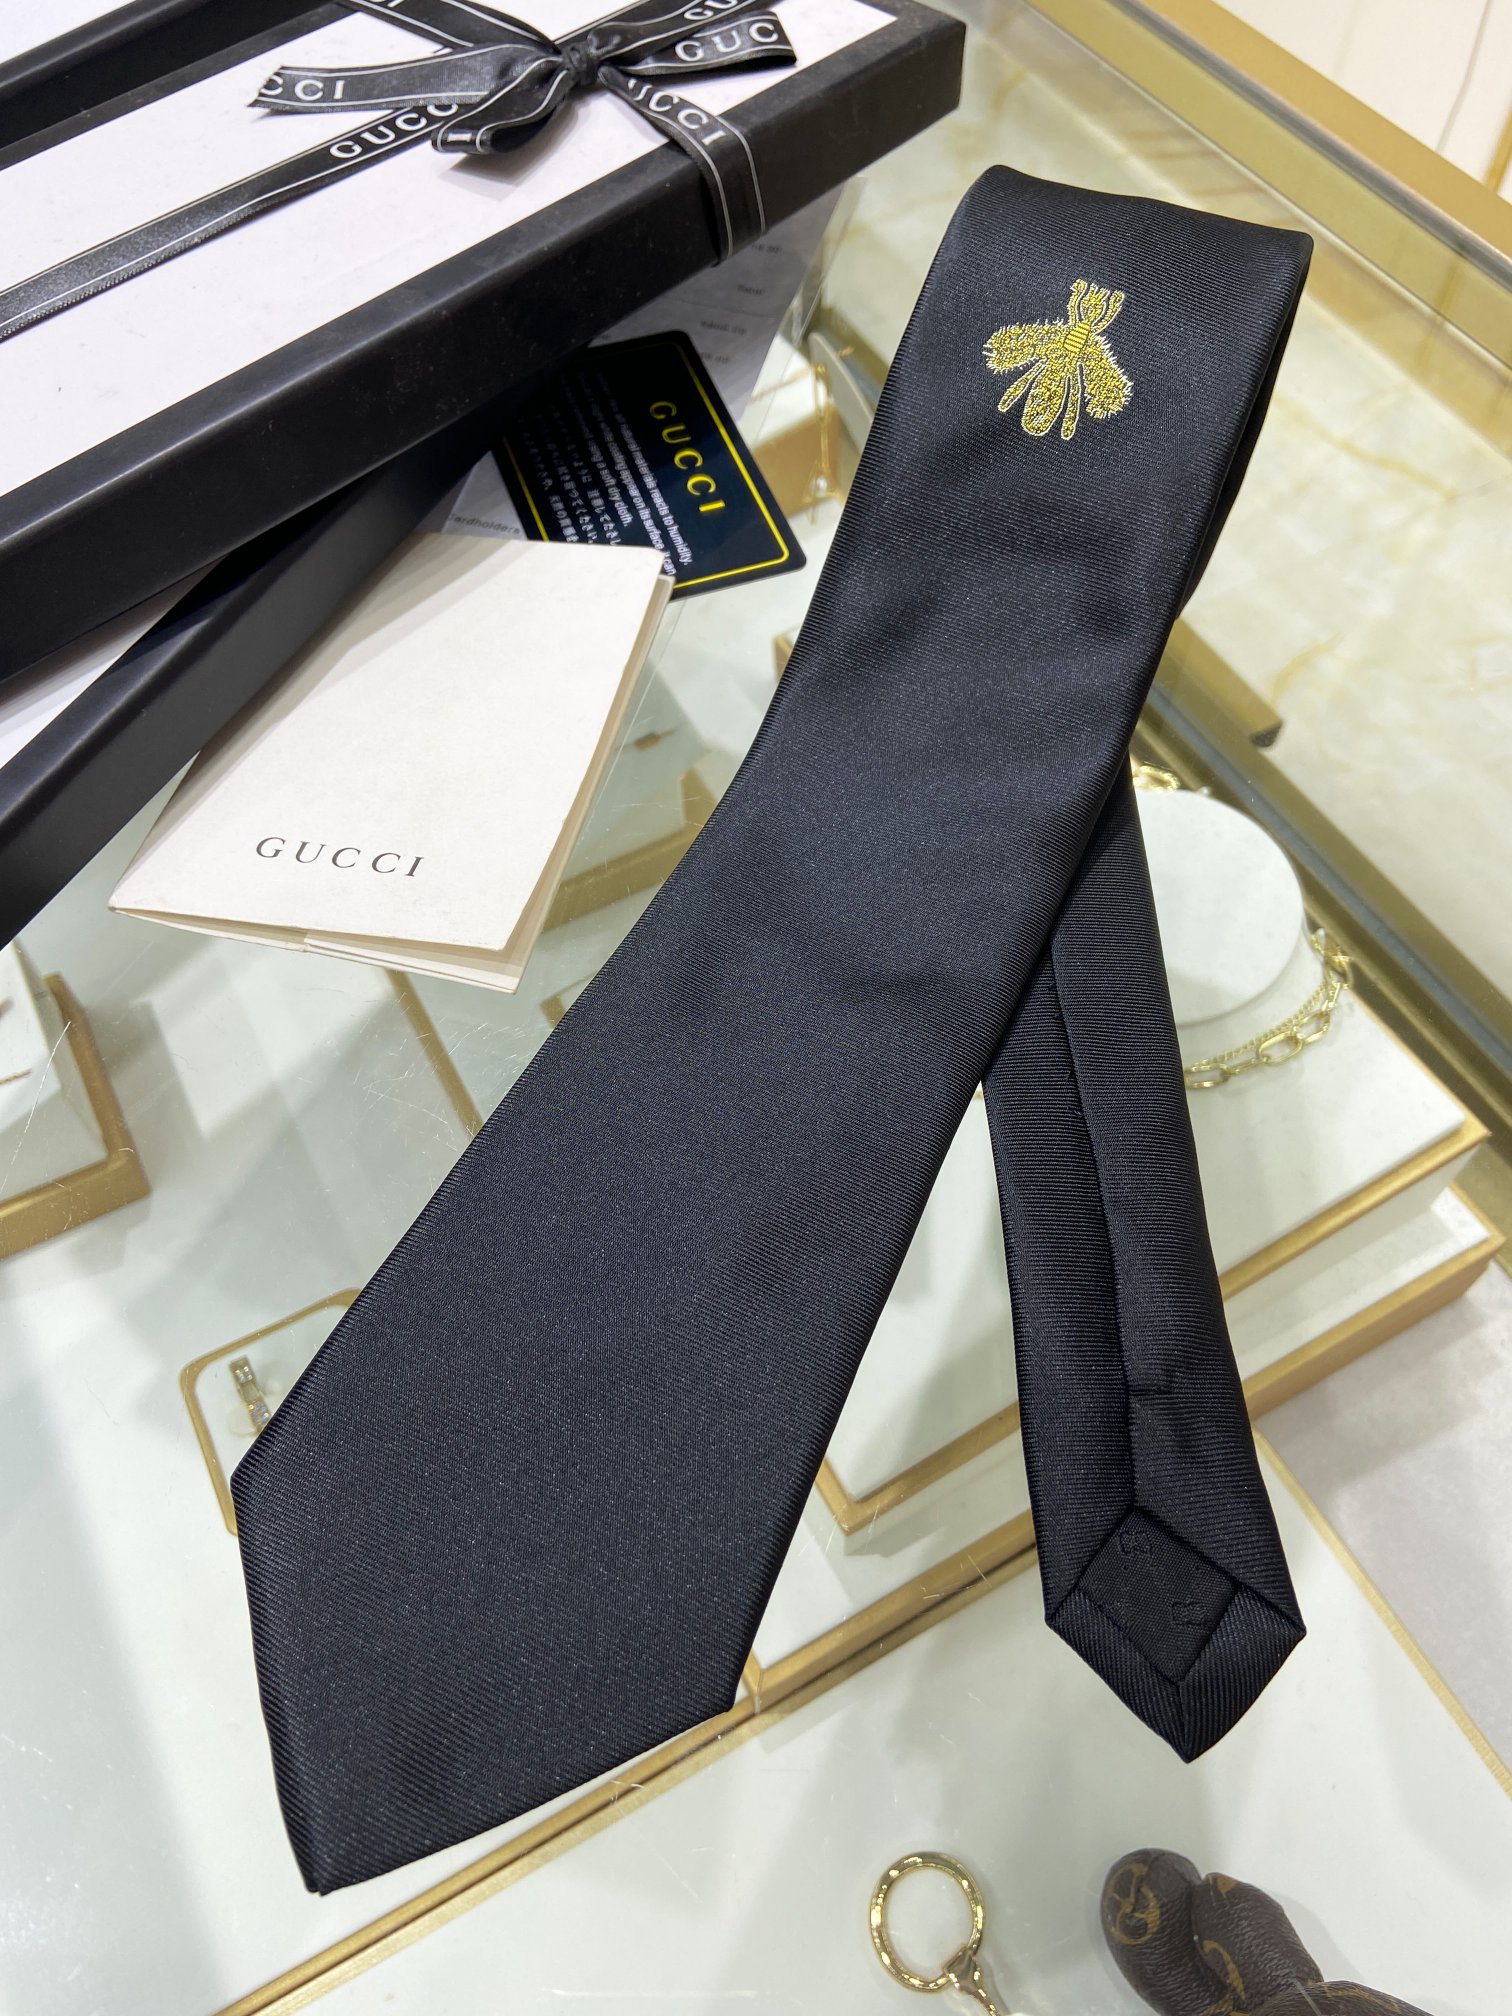 特价G家男士领带系列蜜蜂领带稀有采用经典主题动物绣花展现精湛手工与时尚优雅的理想选择这款领带将标志性完美